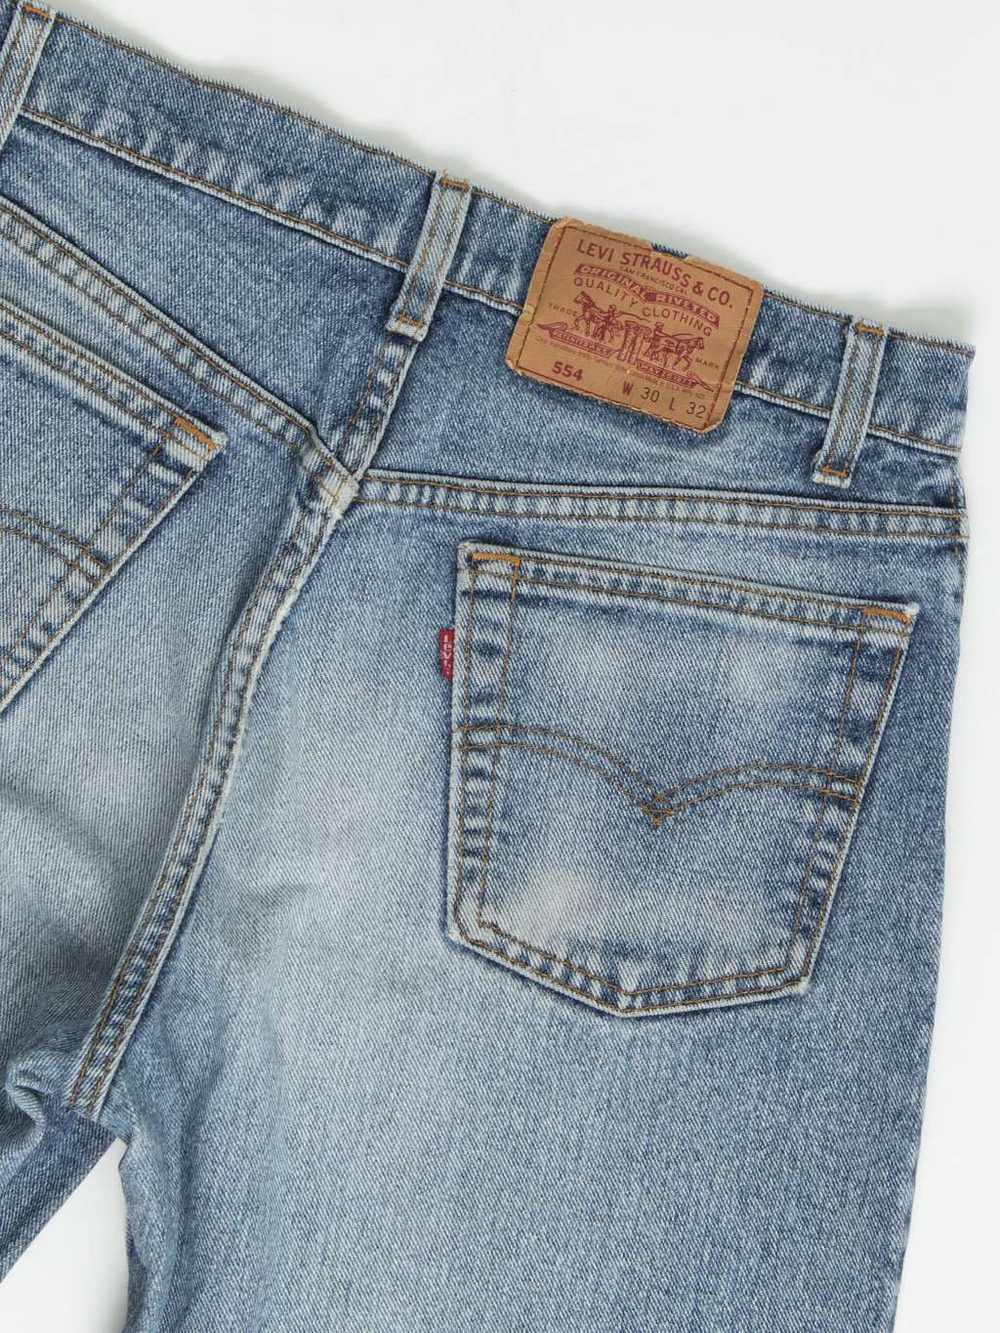 Vintage Levis 554 jeans 30 x 32 blue stonewash US… - image 4